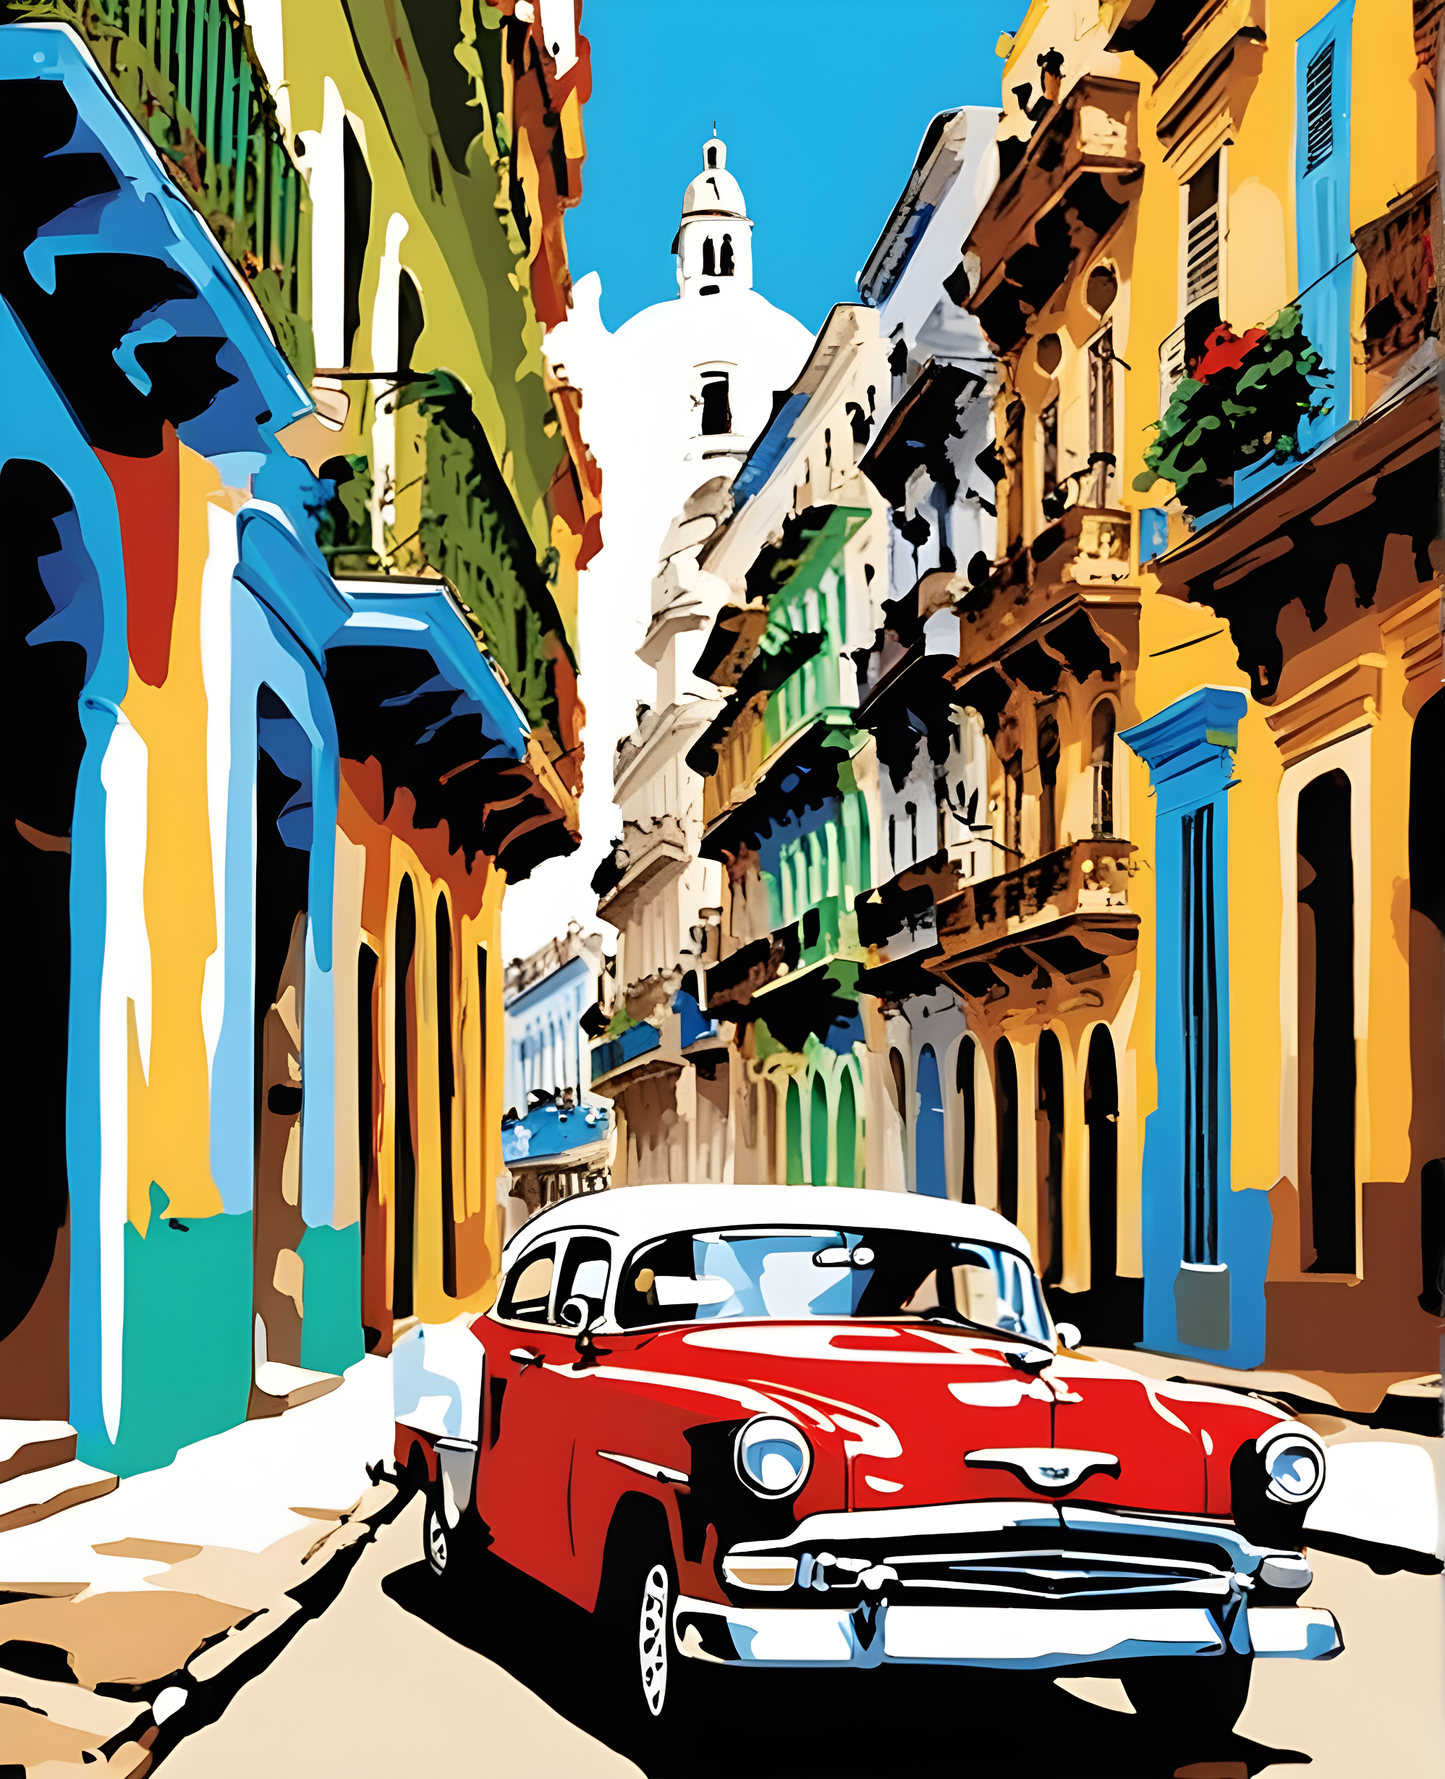 Old Havana, Cuba PD (3) - Van-Go Paint-By-Number Kit